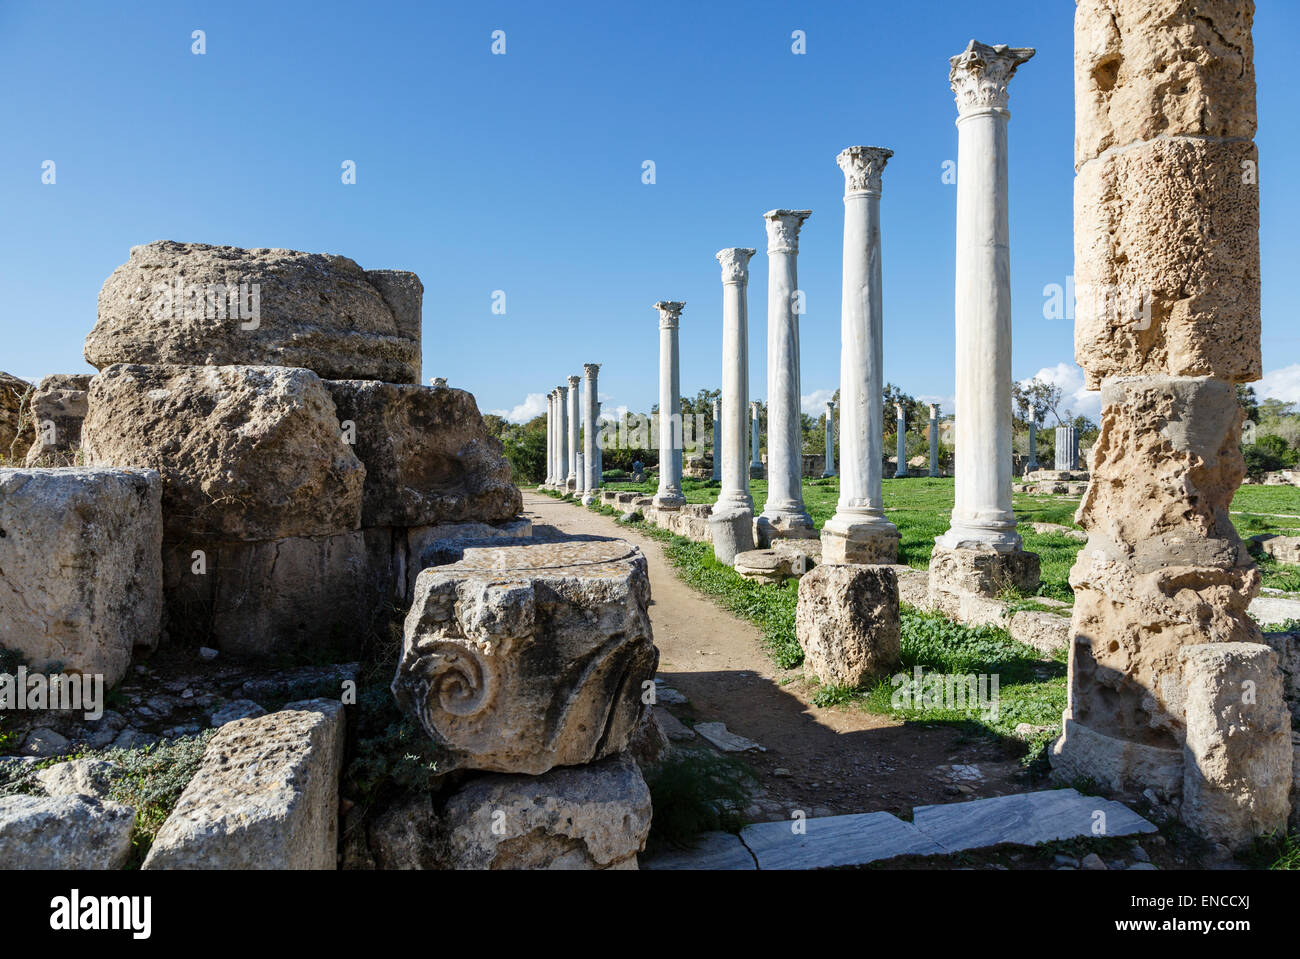 Salamis ruins, near Gazimagusa (Famagusta), Northern Cyprus Stock Photo